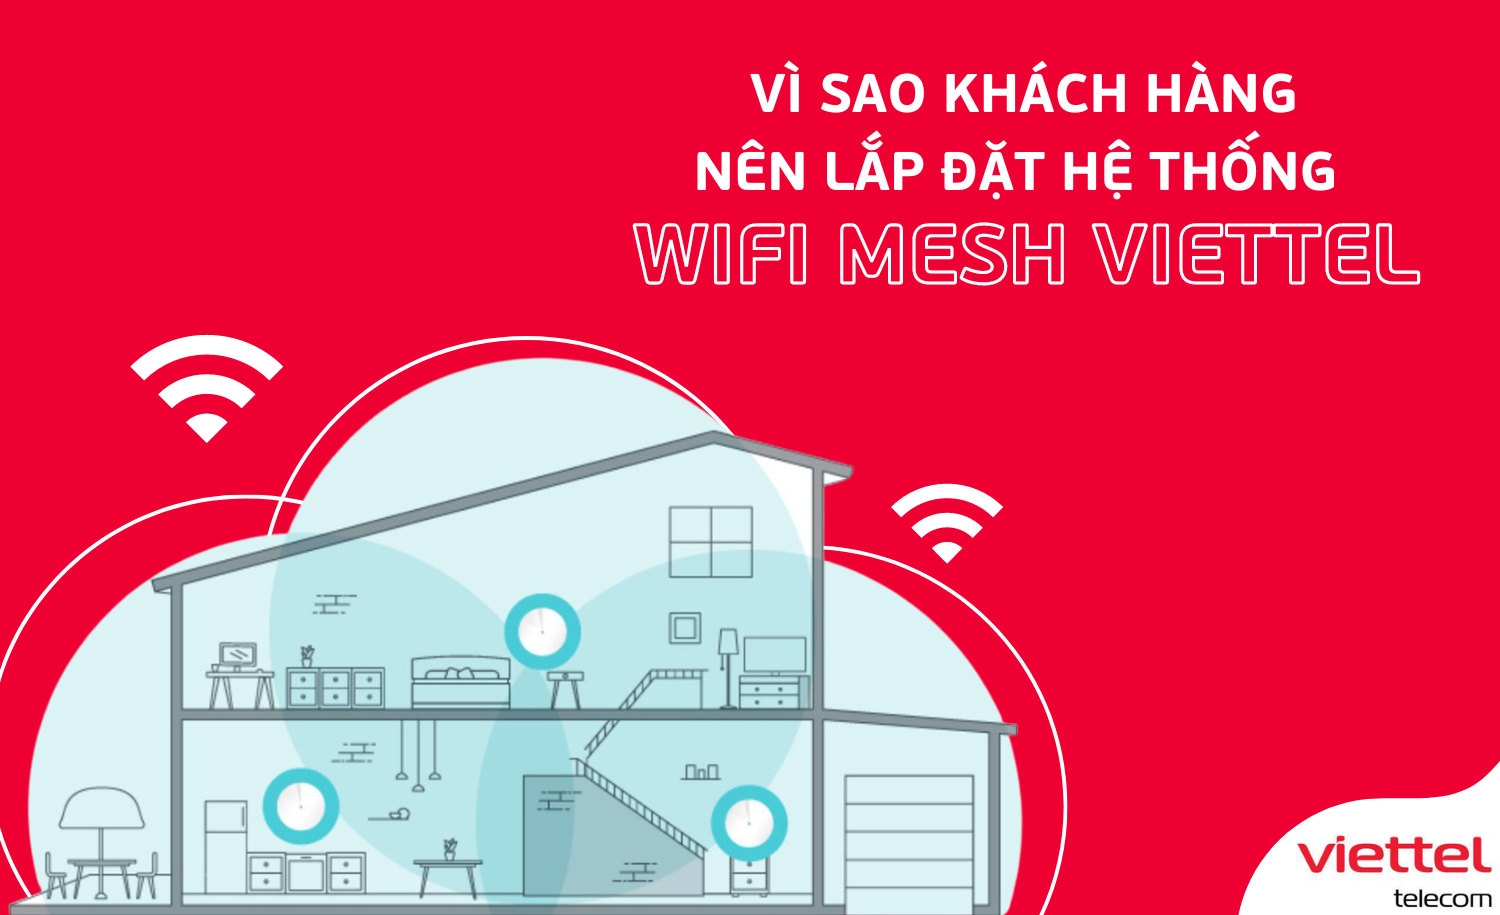 Viettel Telecom là một trong những nhà cung cấp dịch vụ viễn thông hàng đầu tại Việt Nam, cung cấp các hạ tầng viễn thông và công nghệ thông tin hiện đại và tiên tiến. Nếu bạn muốn sử dụng các dịch vụ viễn thông tốt nhất với giá cả hợp lý, hãy đến với Viettel Telecom. Xem hình ảnh liên quan để khám phá thêm về các dịch vụ đa dạng của Viettel Telecom!